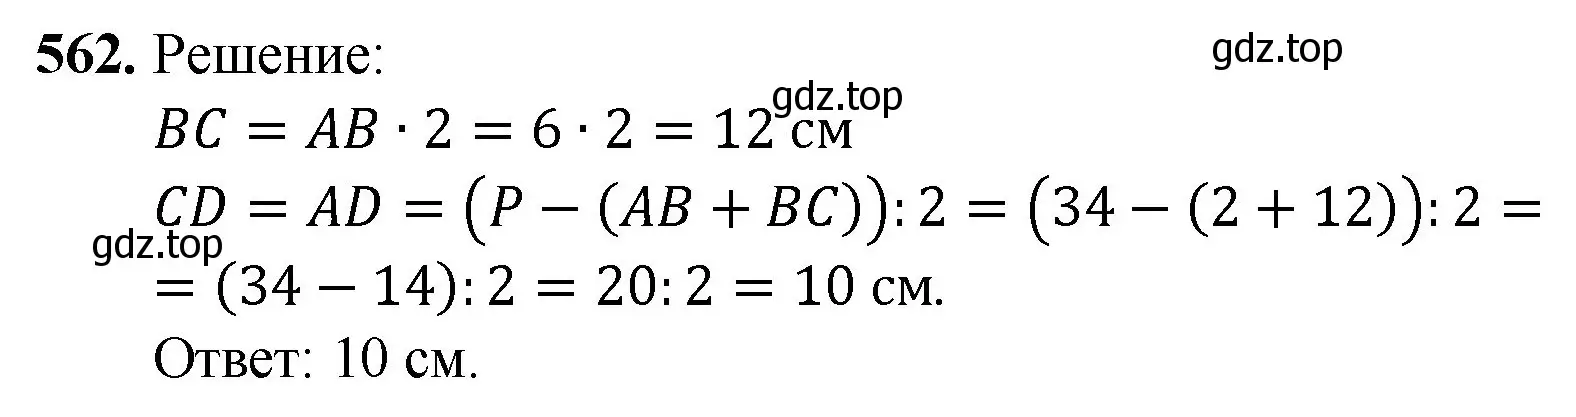 Решение номер 562 (страница 137) гдз по математике 5 класс Мерзляк, Полонский, учебник